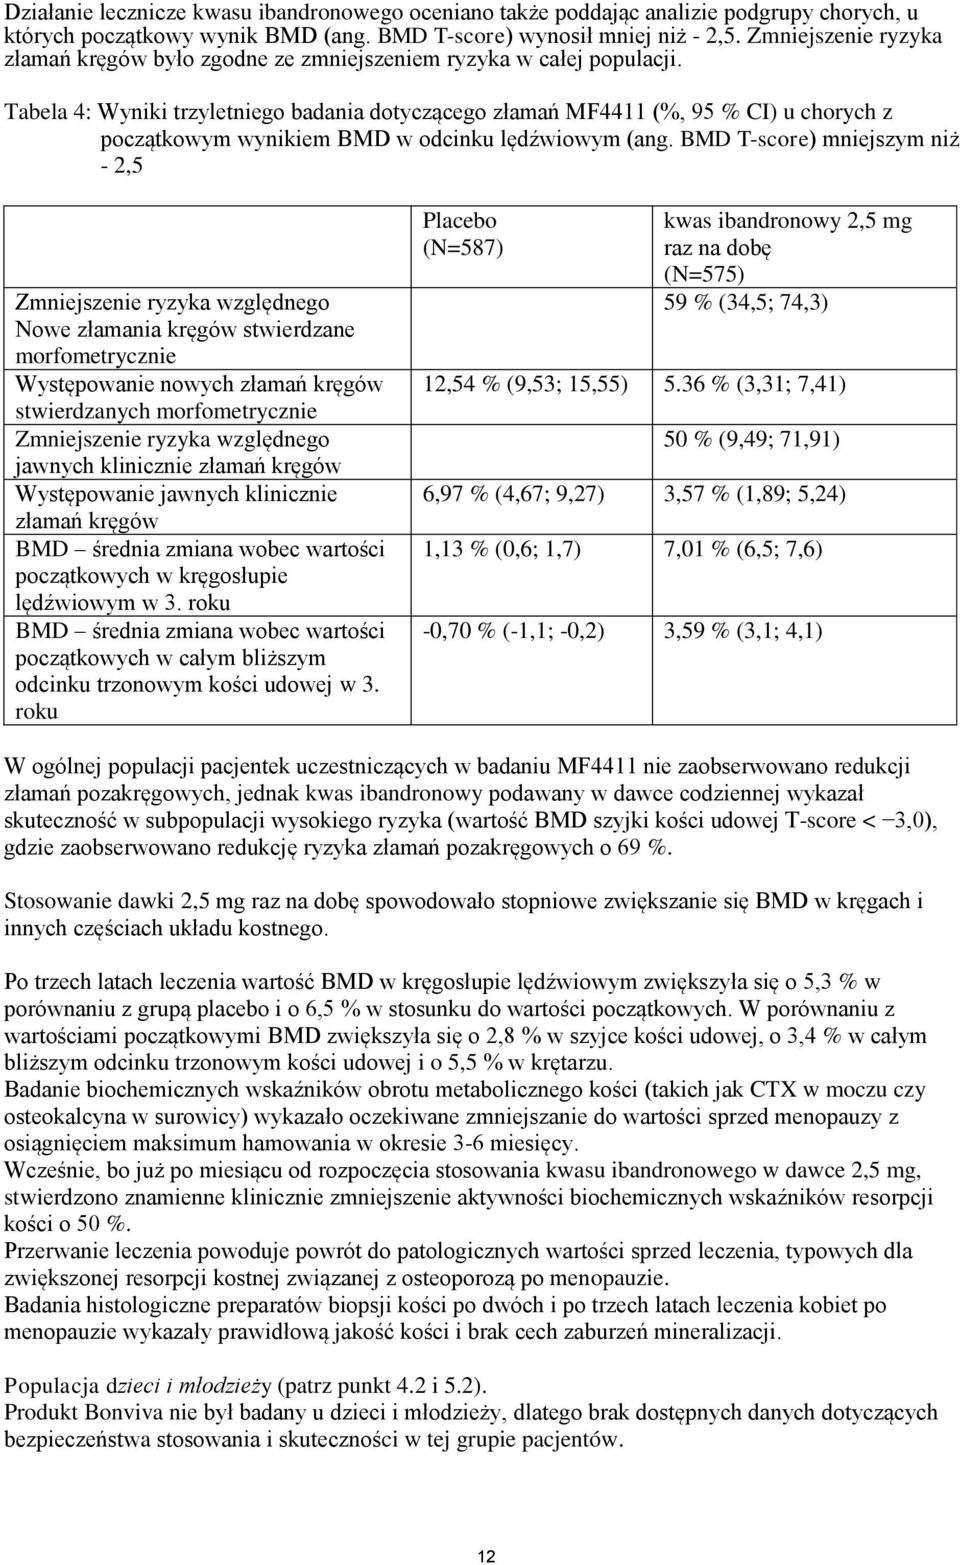 Tabela 4: Wyniki trzyletniego badania dotyczącego złamań MF4411 (%, 95 % CI) u chorych z początkowym wynikiem BMD w odcinku lędźwiowym (ang.